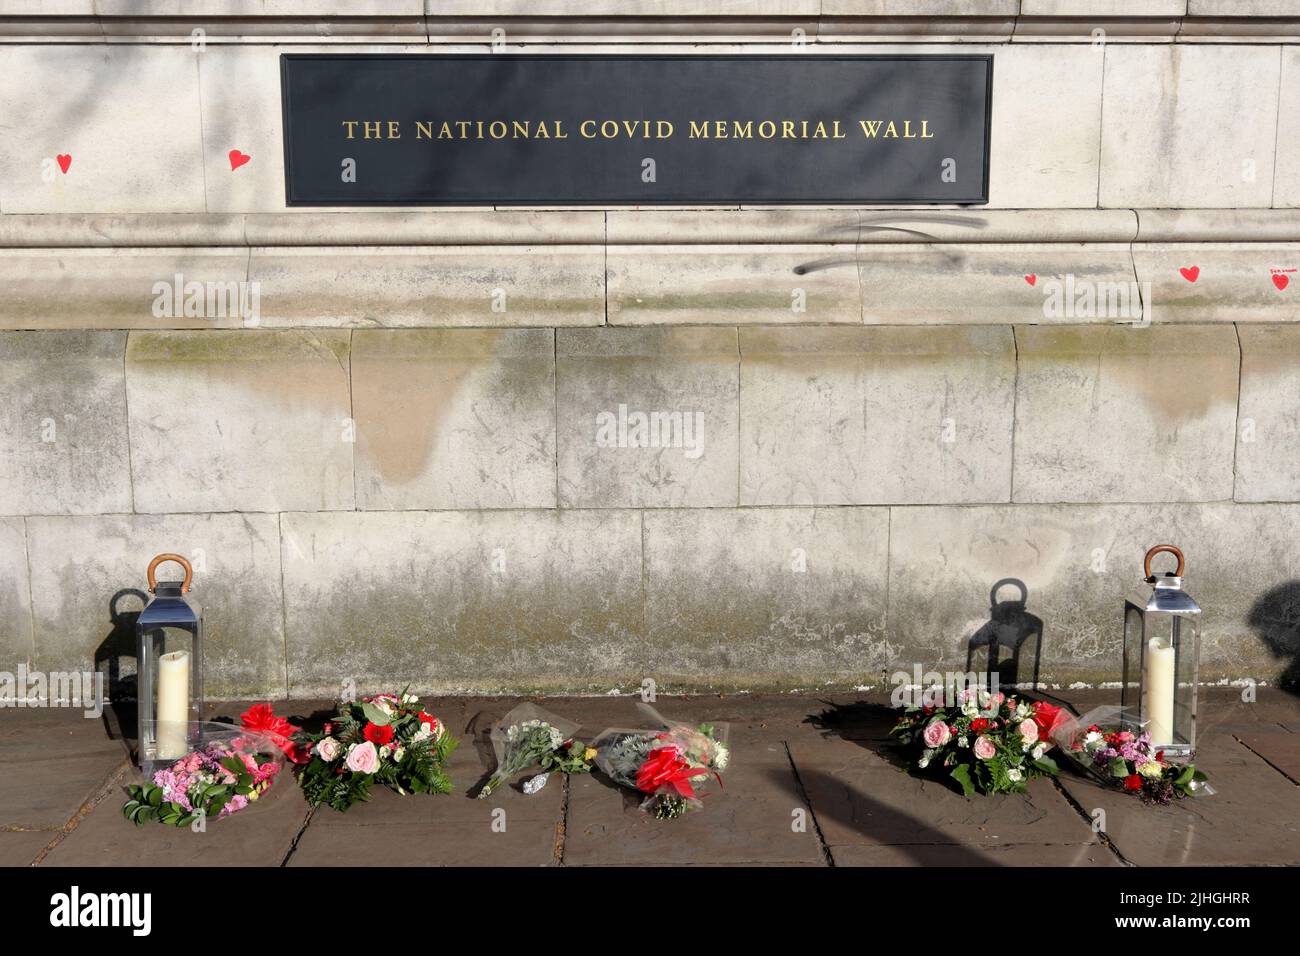 Londres, Reino Unido - 30 de marzo de 2021: El Muro Conmemorativo Nacional de Covid, voluntarios pintando 150.000 corazones rojos para conmemorar las muertes de Covid-19 Foto de stock